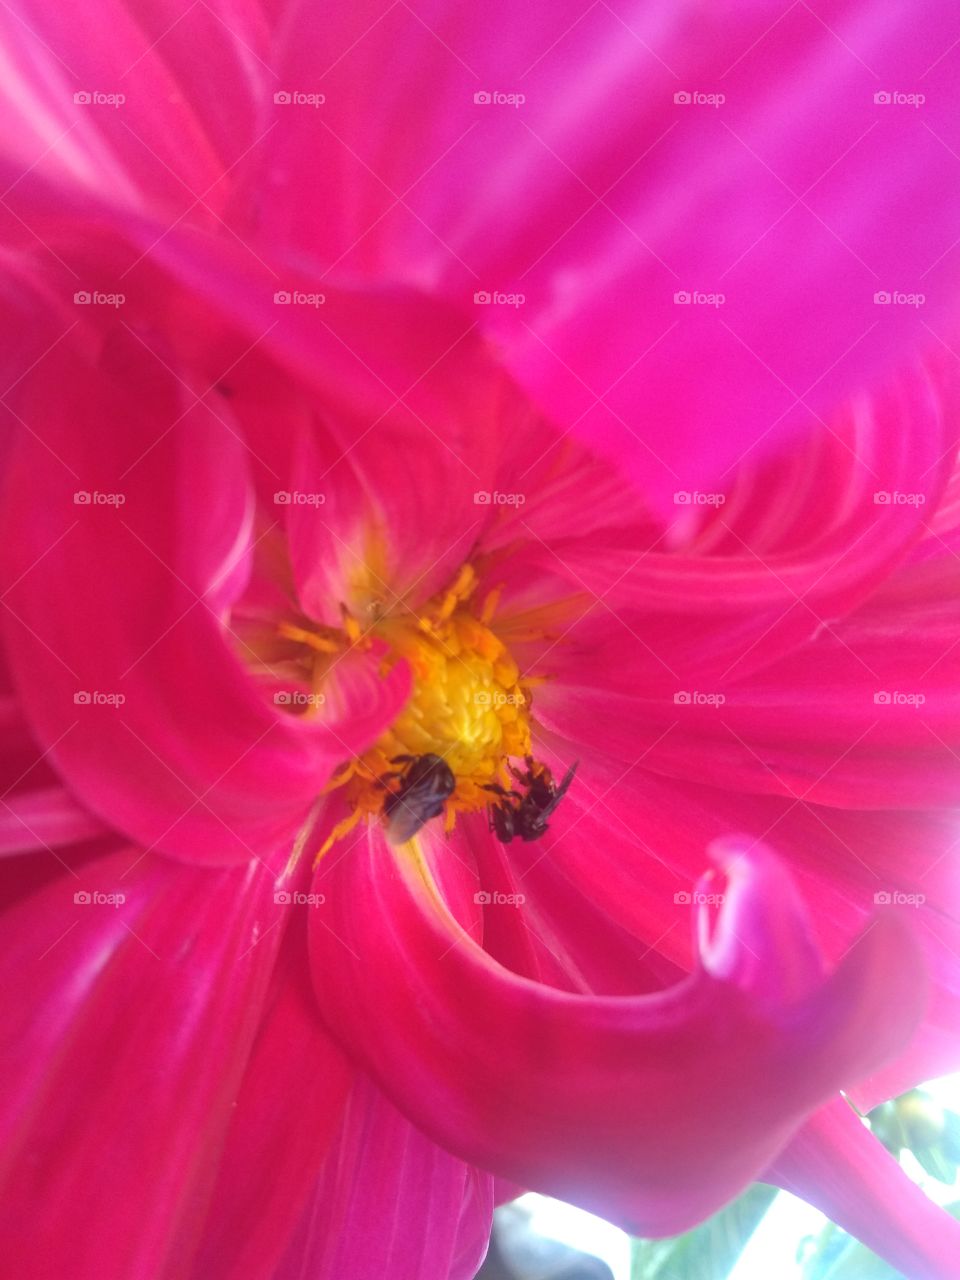 Bees un a flower... Abelhas na flor...